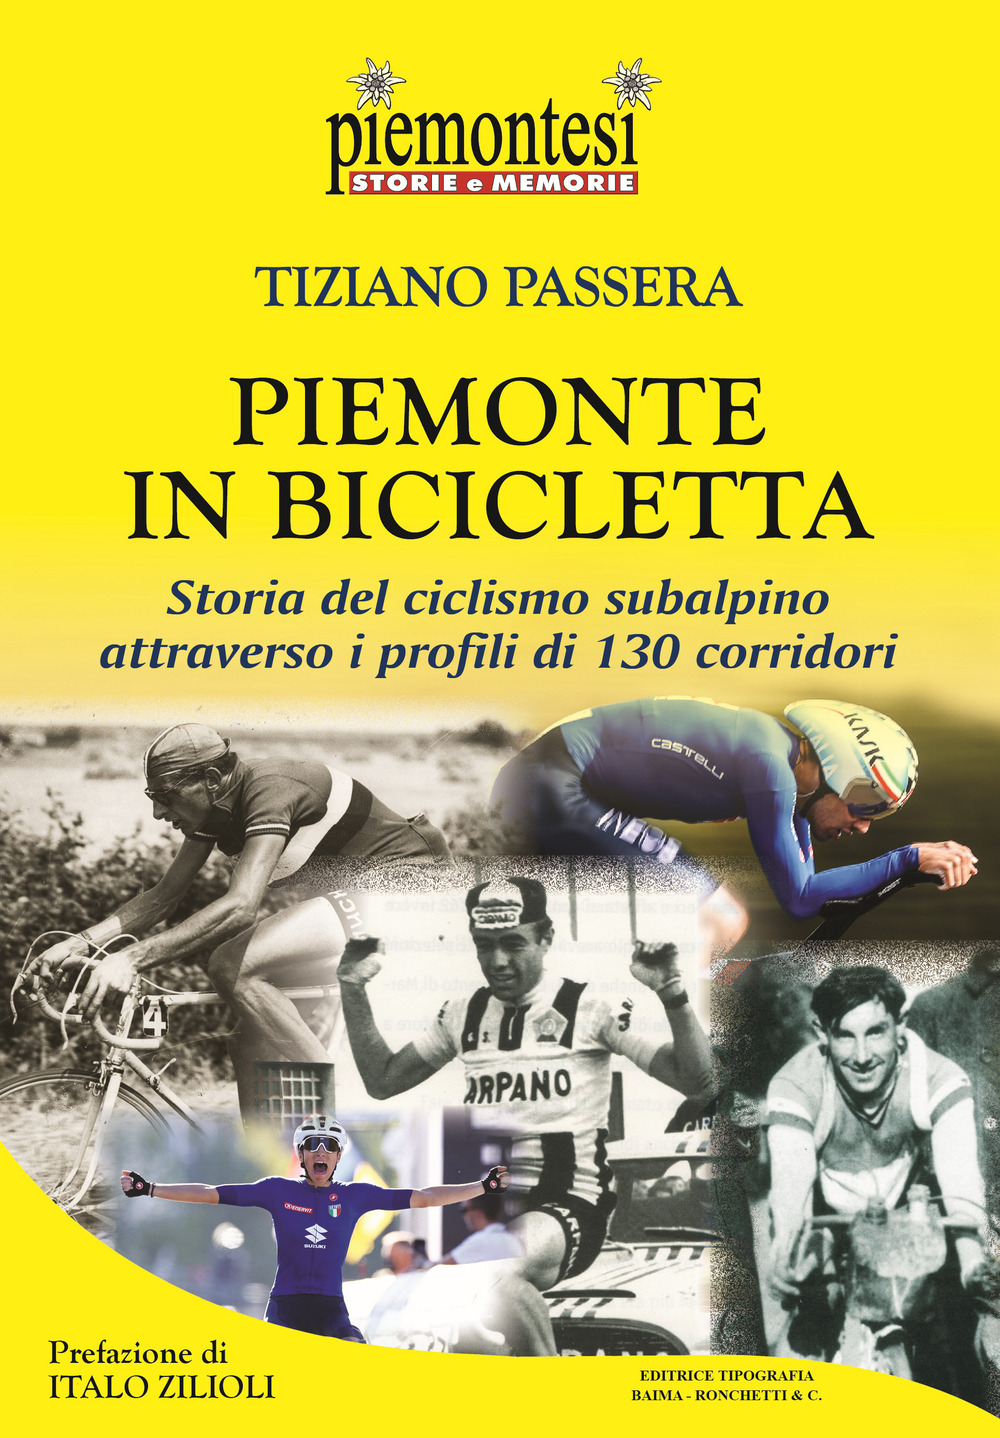 Libri Tiziano Passera - Piemonte In Bicicletta. Storia Del Ciclismo Subalpino Attraverso I Profili Di 130 Corridori NUOVO SIGILLATO, EDIZIONE DEL 09/05/2022 SUBITO DISPONIBILE